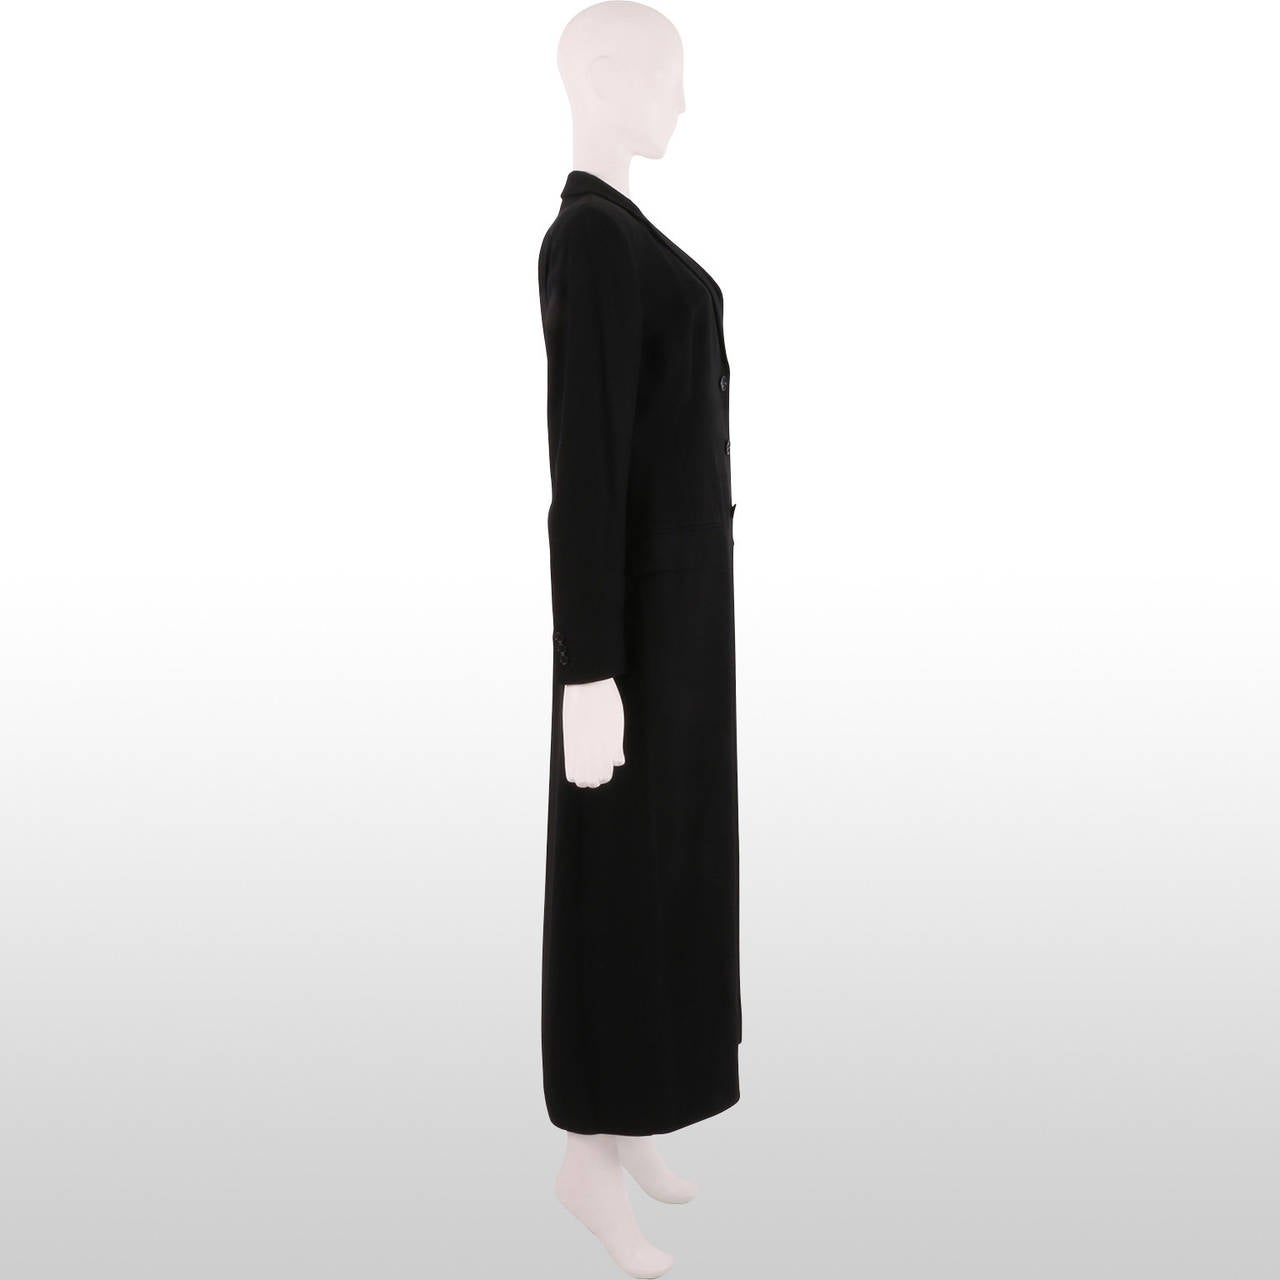 Dolce & Gabbana Full Length Black Tailored Coat 1